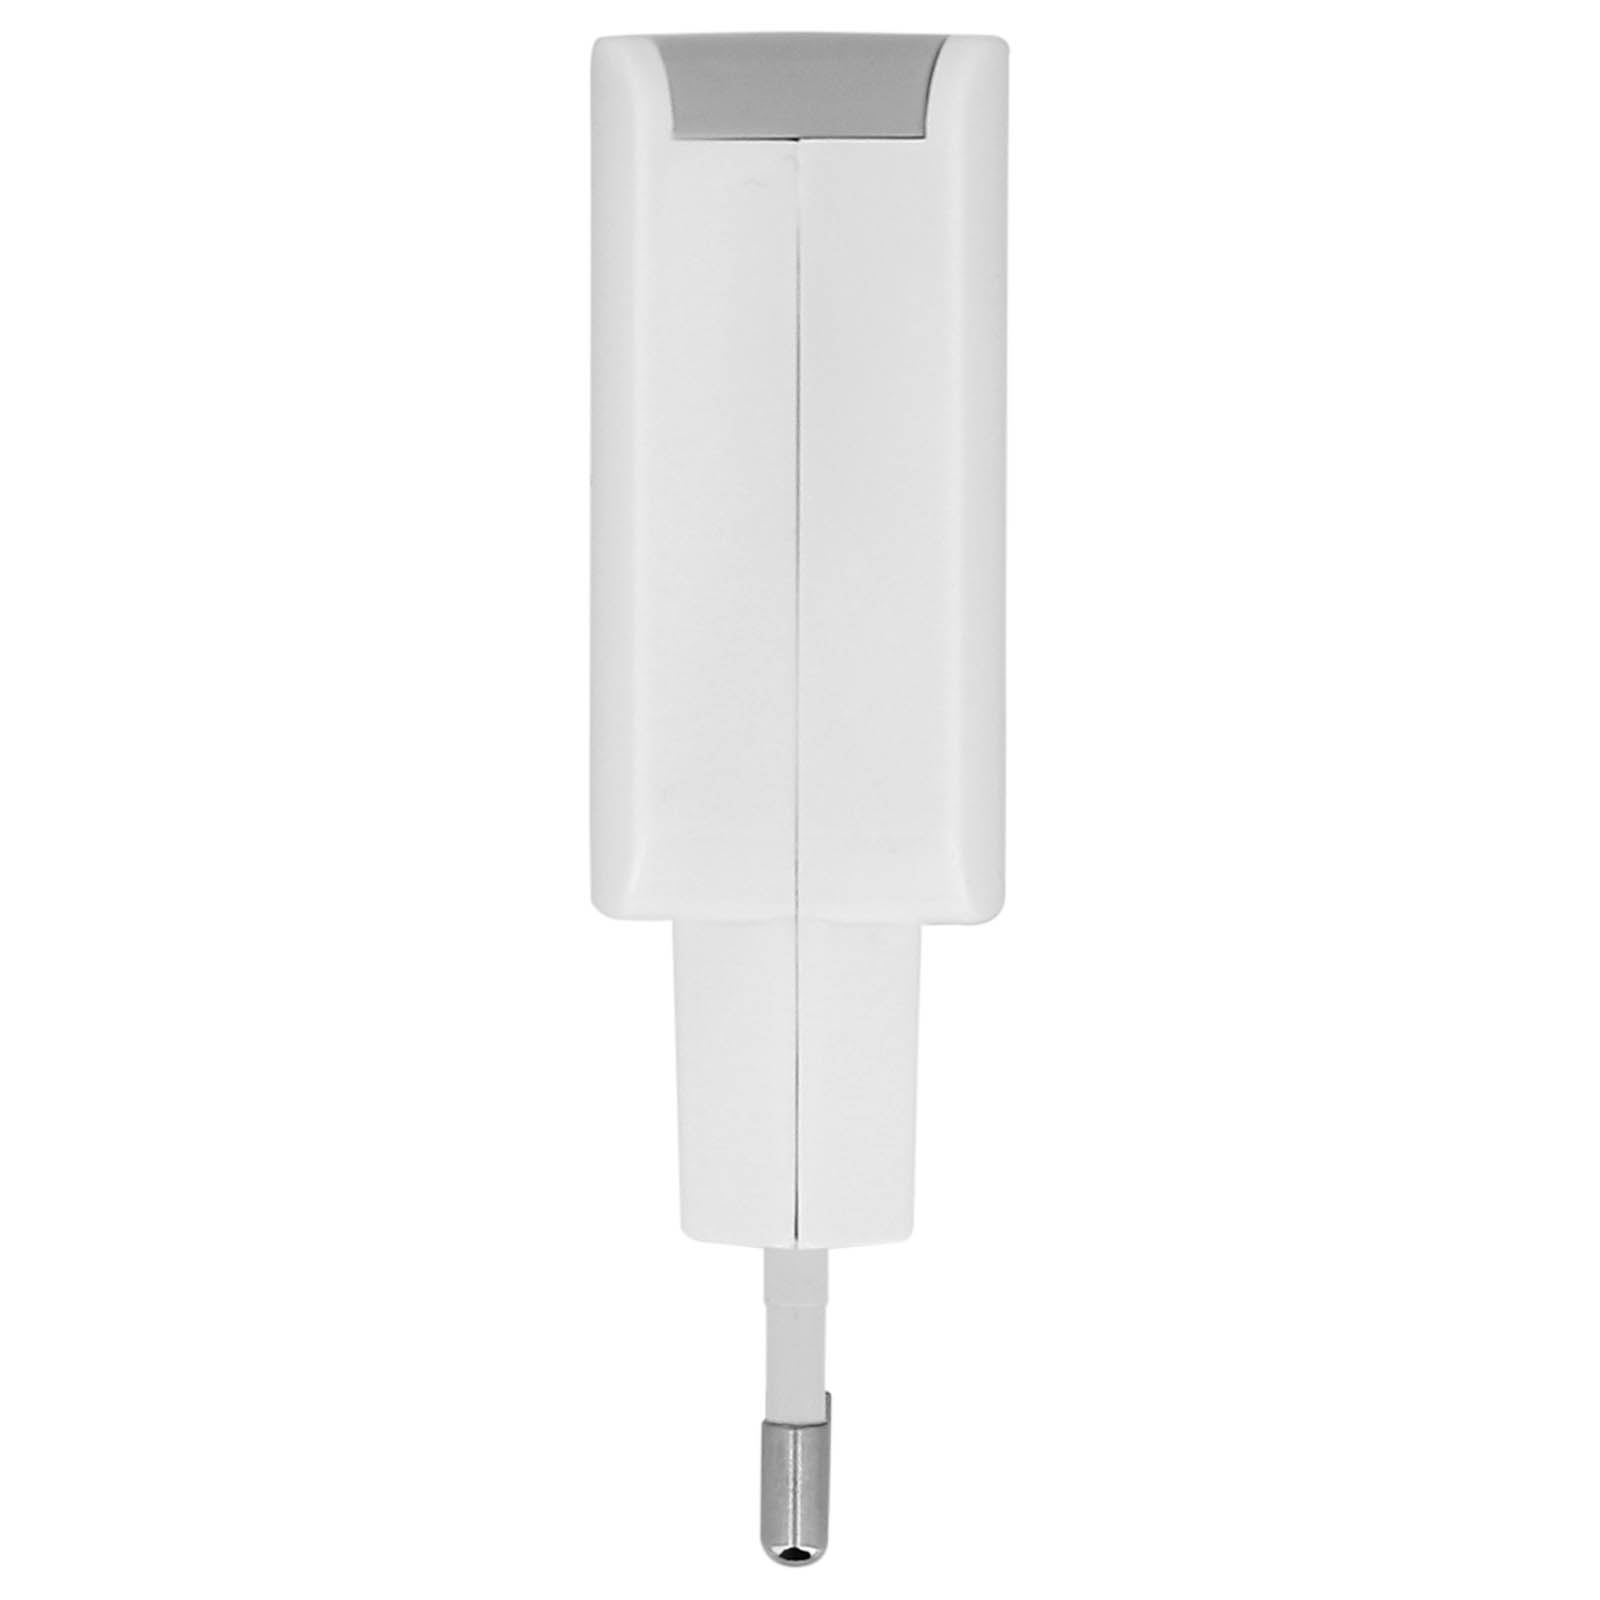 AVIZAR Netzteil, 3.1A USB Wand-Ladegerät Weiß Netzteile Universal